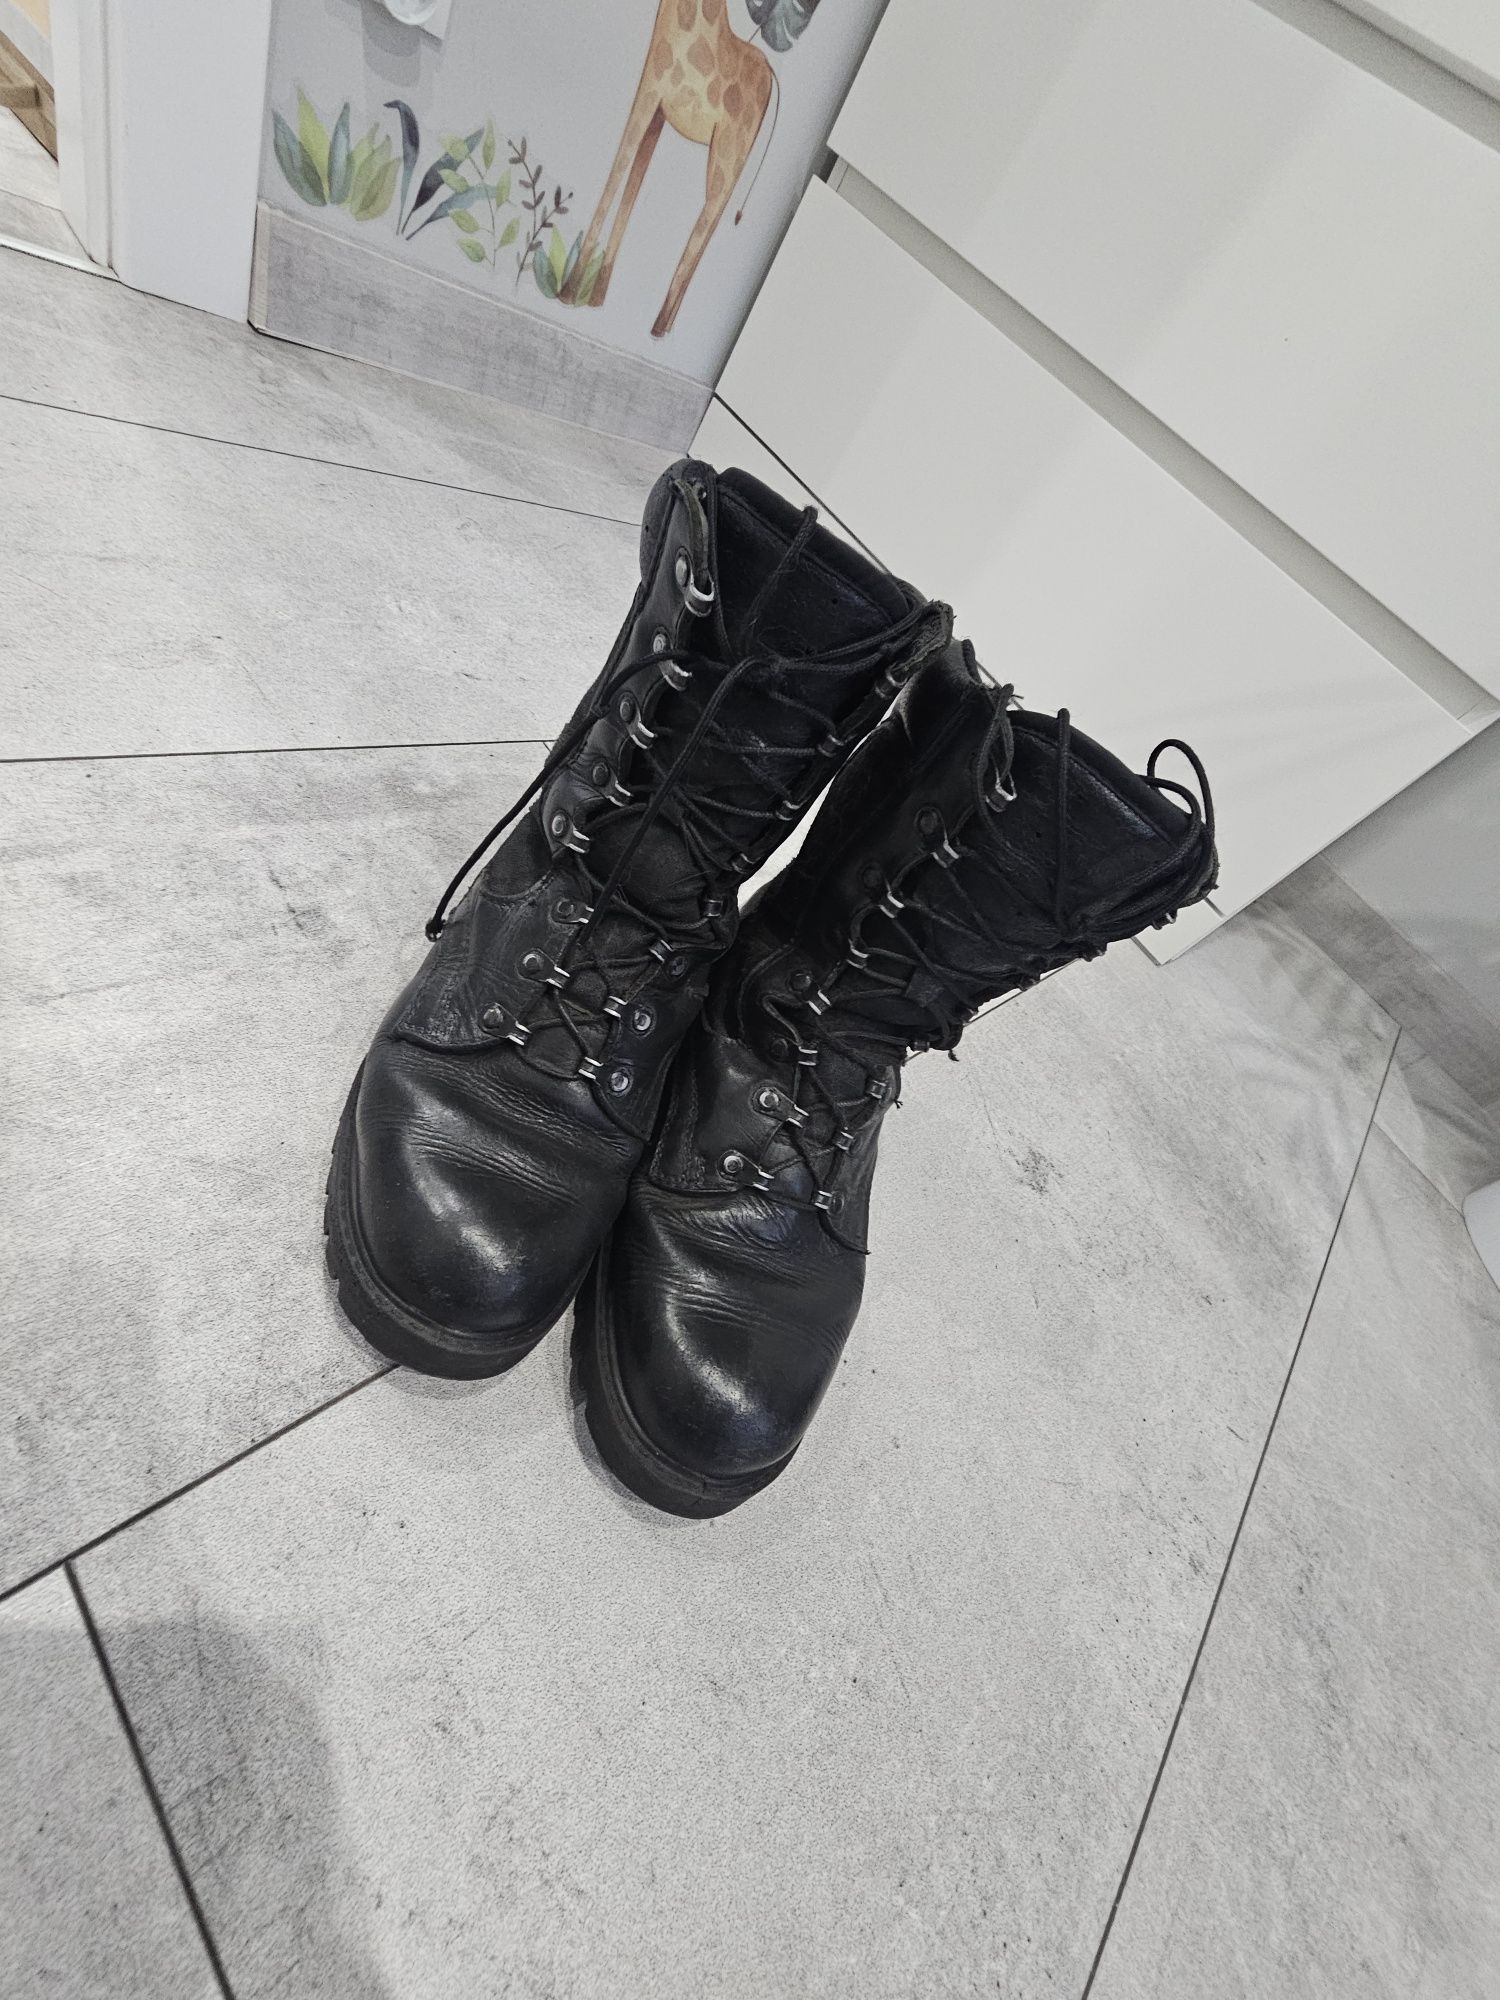 Buty wojskowe mon 926 mon rozmiar 25